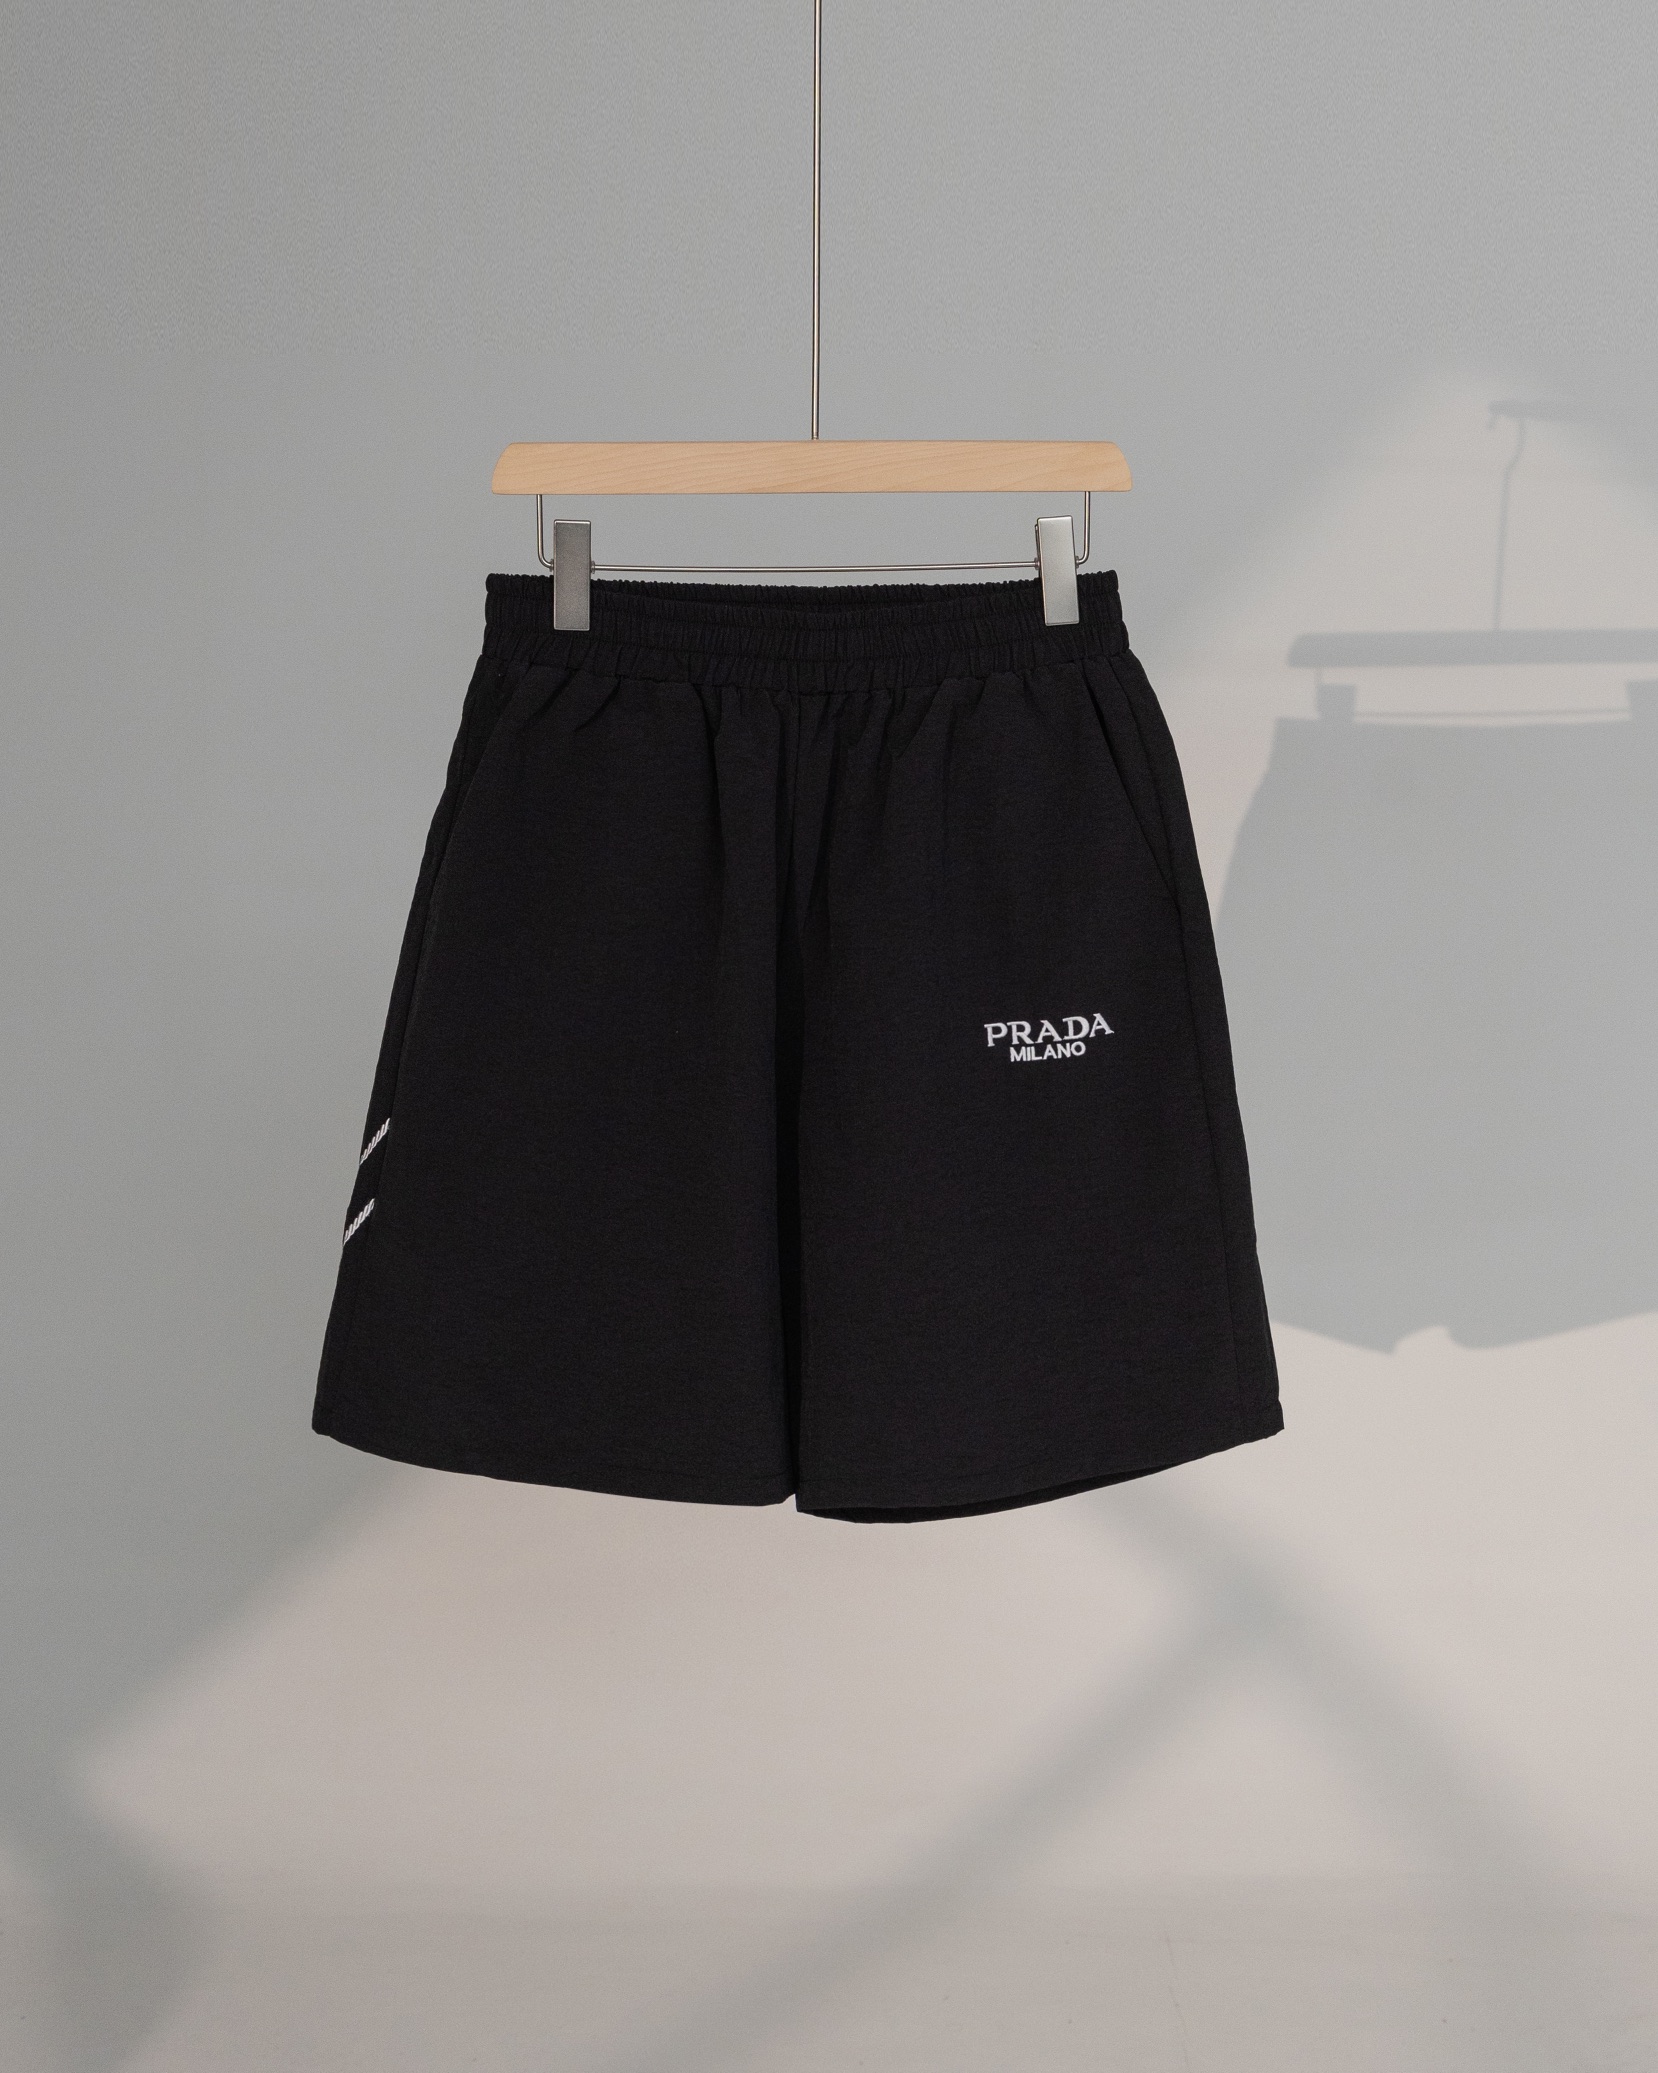 Prada Clothing Shorts Printing Summer Collection Fashion Casual